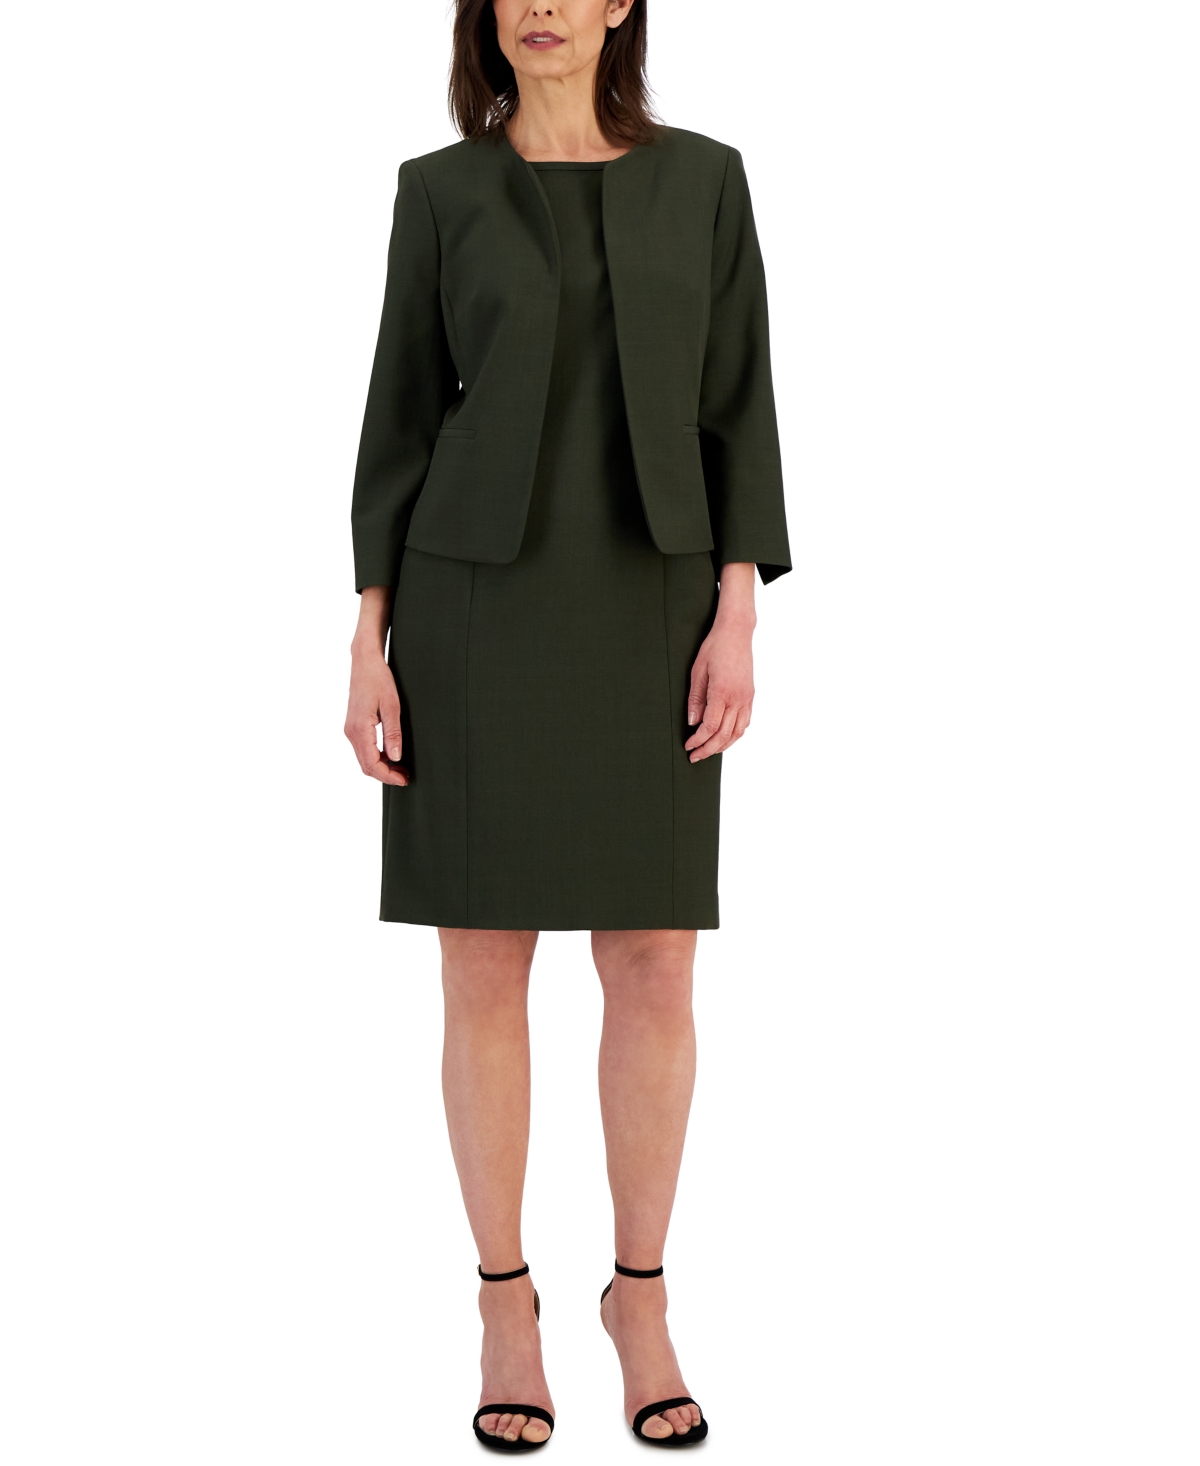 Le Suit Collarless Dress Suit, Regular & Petite Sizes - Macy's